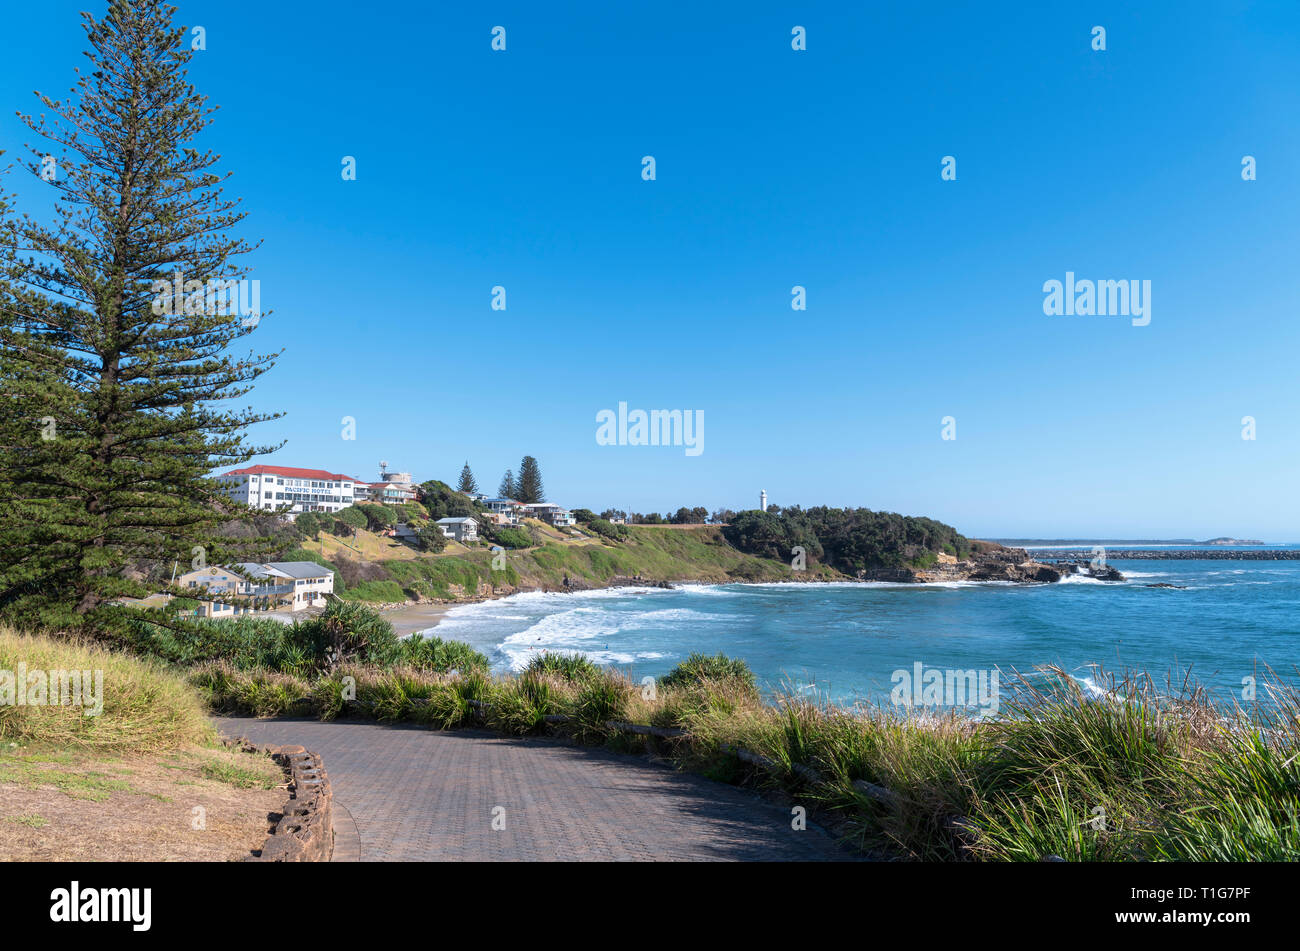 The Main Beach looking towards Yamba Lighthouse, Yamba, New South Wales, Australia Stock Photo